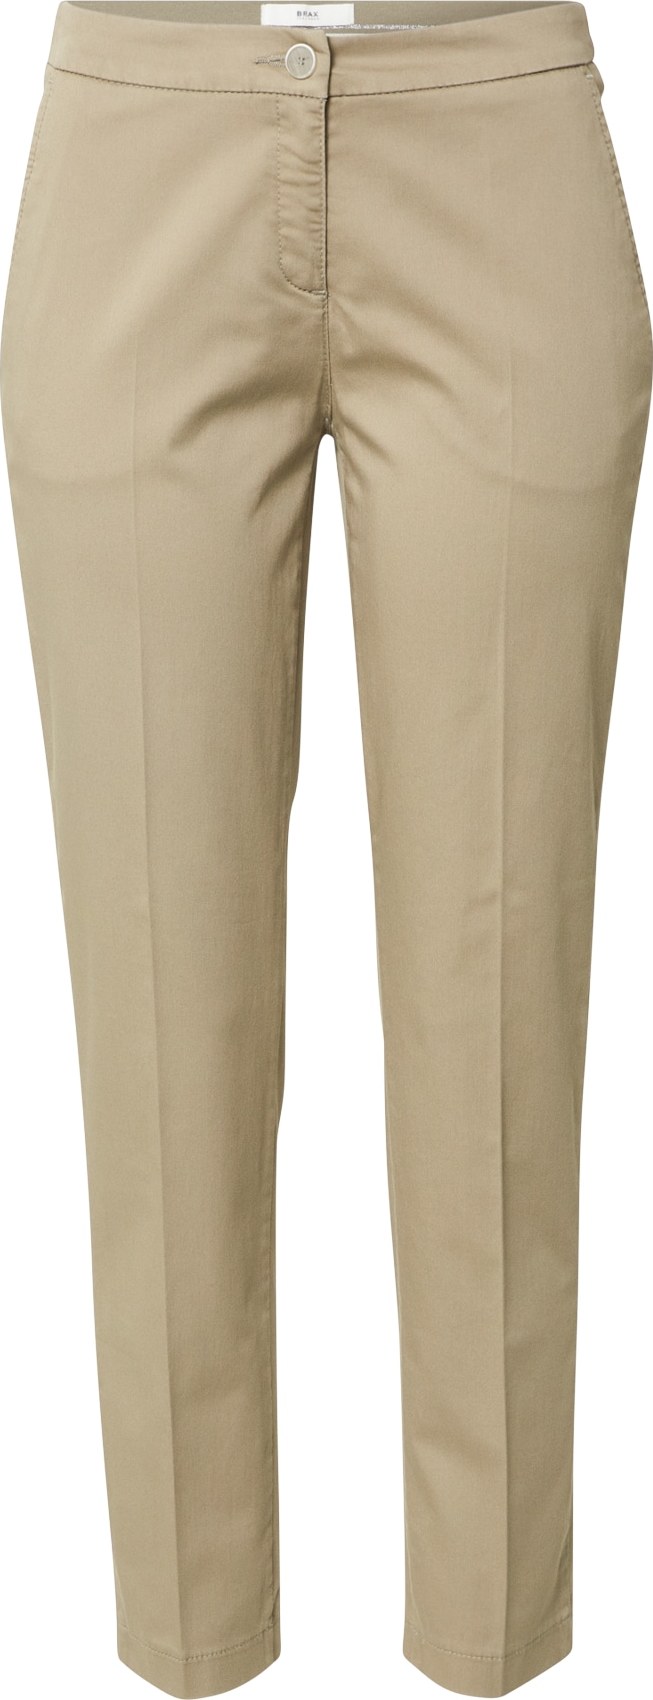 BRAX Kalhoty s puky 'Maron' pudrová / stříbrná